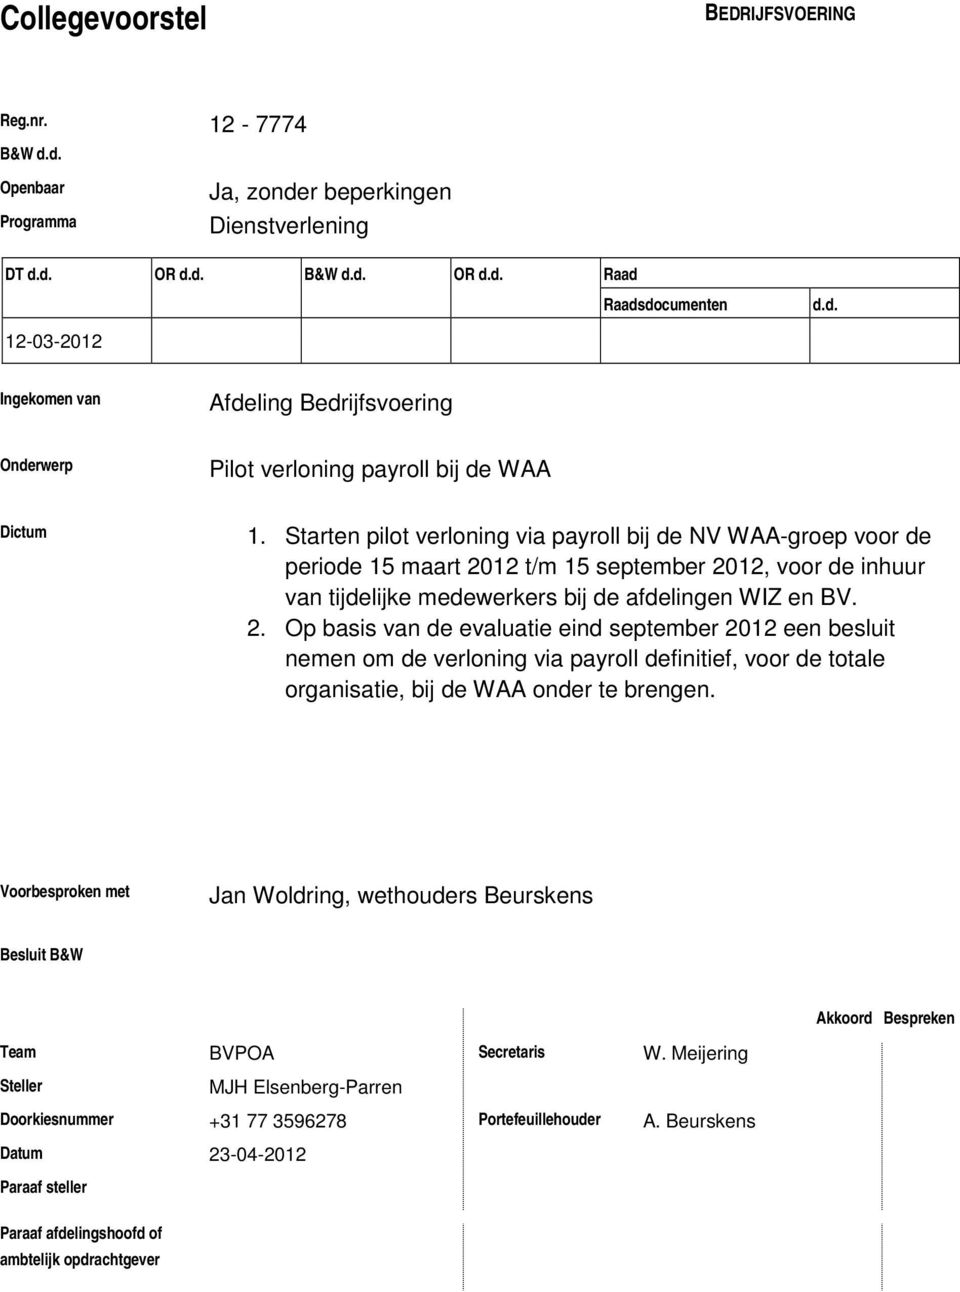 12 t/m 15 september 2012, voor de inhuur van tijdelijke medewerkers bij de afdelingen WIZ en BV. 2. Op basis van de evaluatie eind september 2012 een besluit nemen om de verloning via payroll definitief, voor de totale organisatie, bij de WAA onder te brengen.